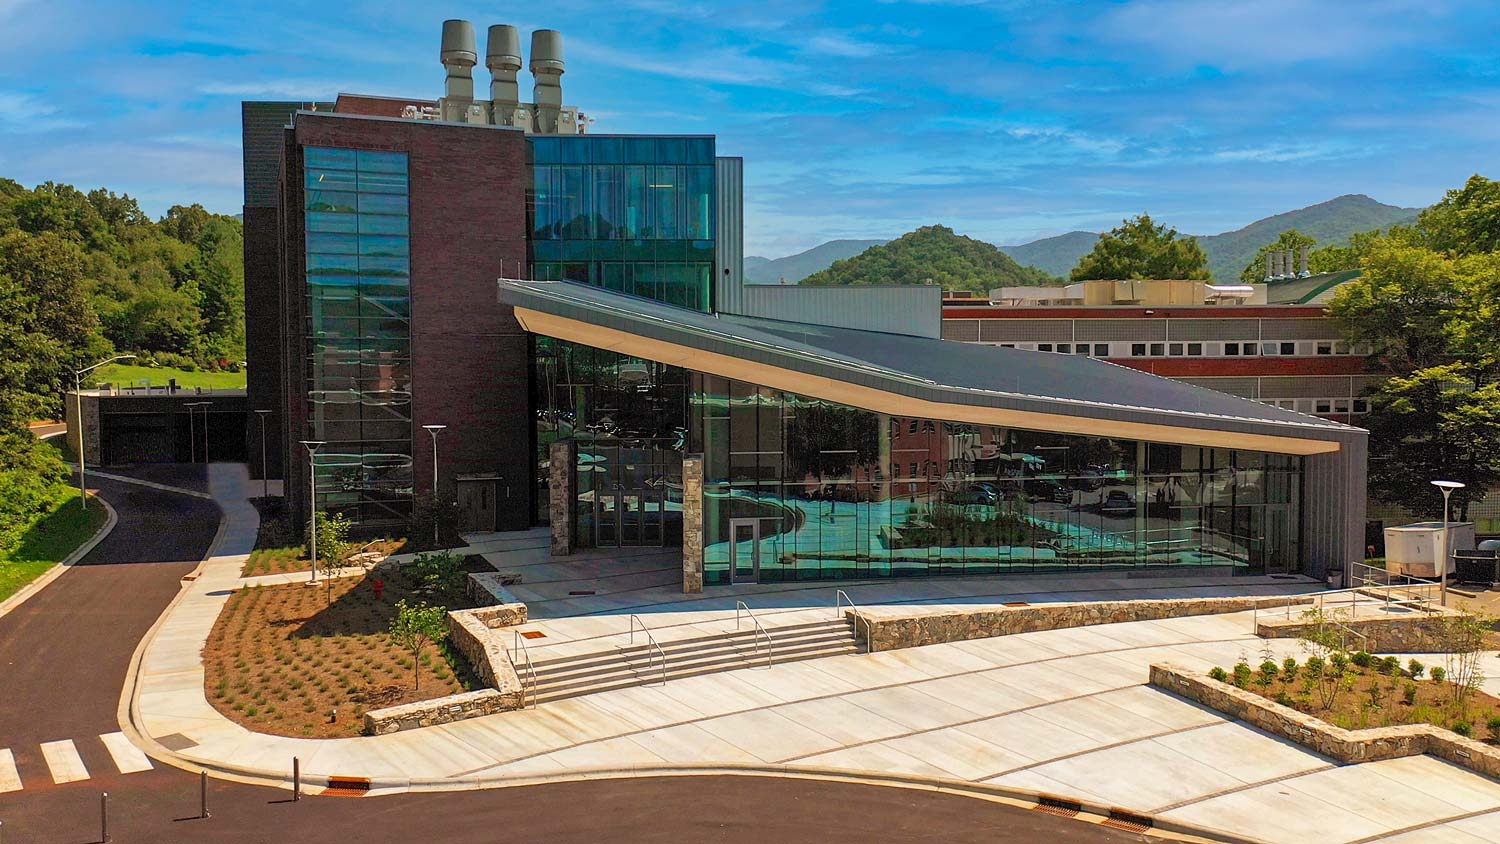 Das neue Apodaca Science Building ist der neueste Lernbereich der Western Carolina University mit umfangreichen audiovisuellen Einrichtungen in den Klassenräumen, Laboren und öffentlichen Versammlungsbereichen. Alle Fotos mit freundlicher Genehmigung der Western Carolina University.